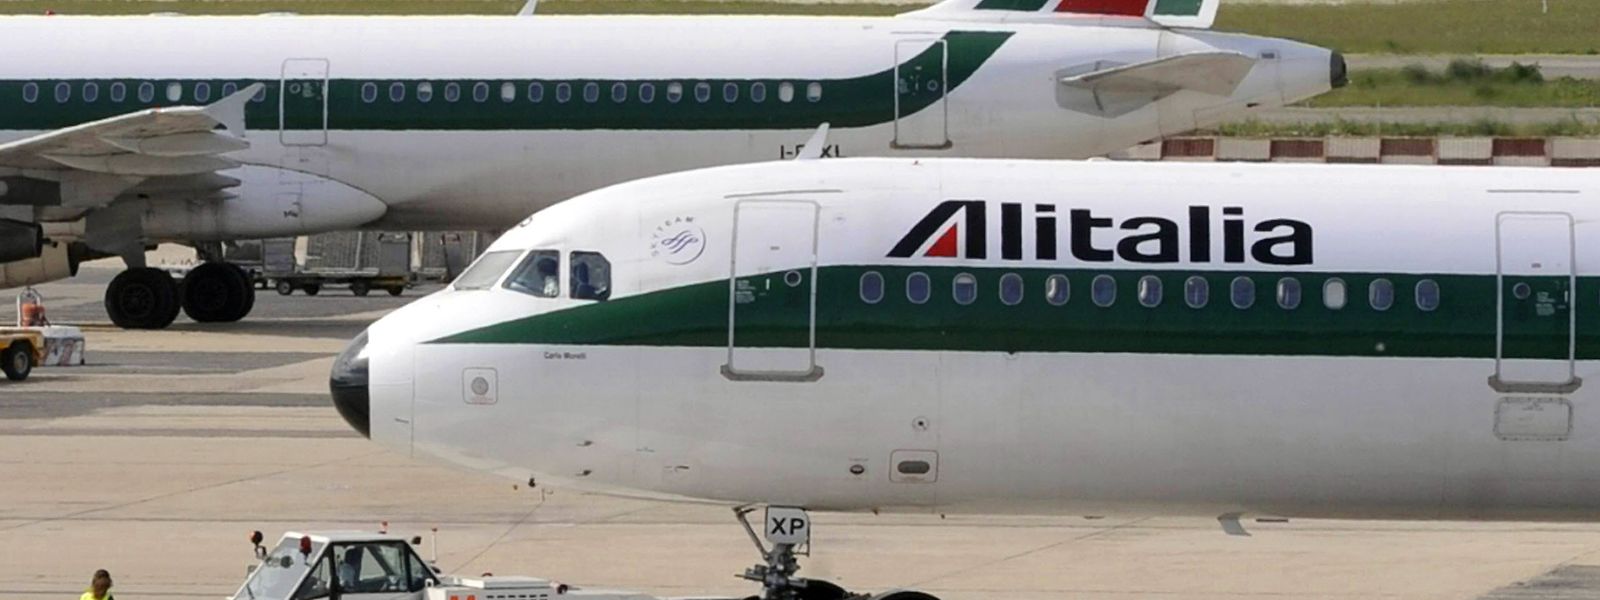 Alitalia ist seit 2017 insolvent.